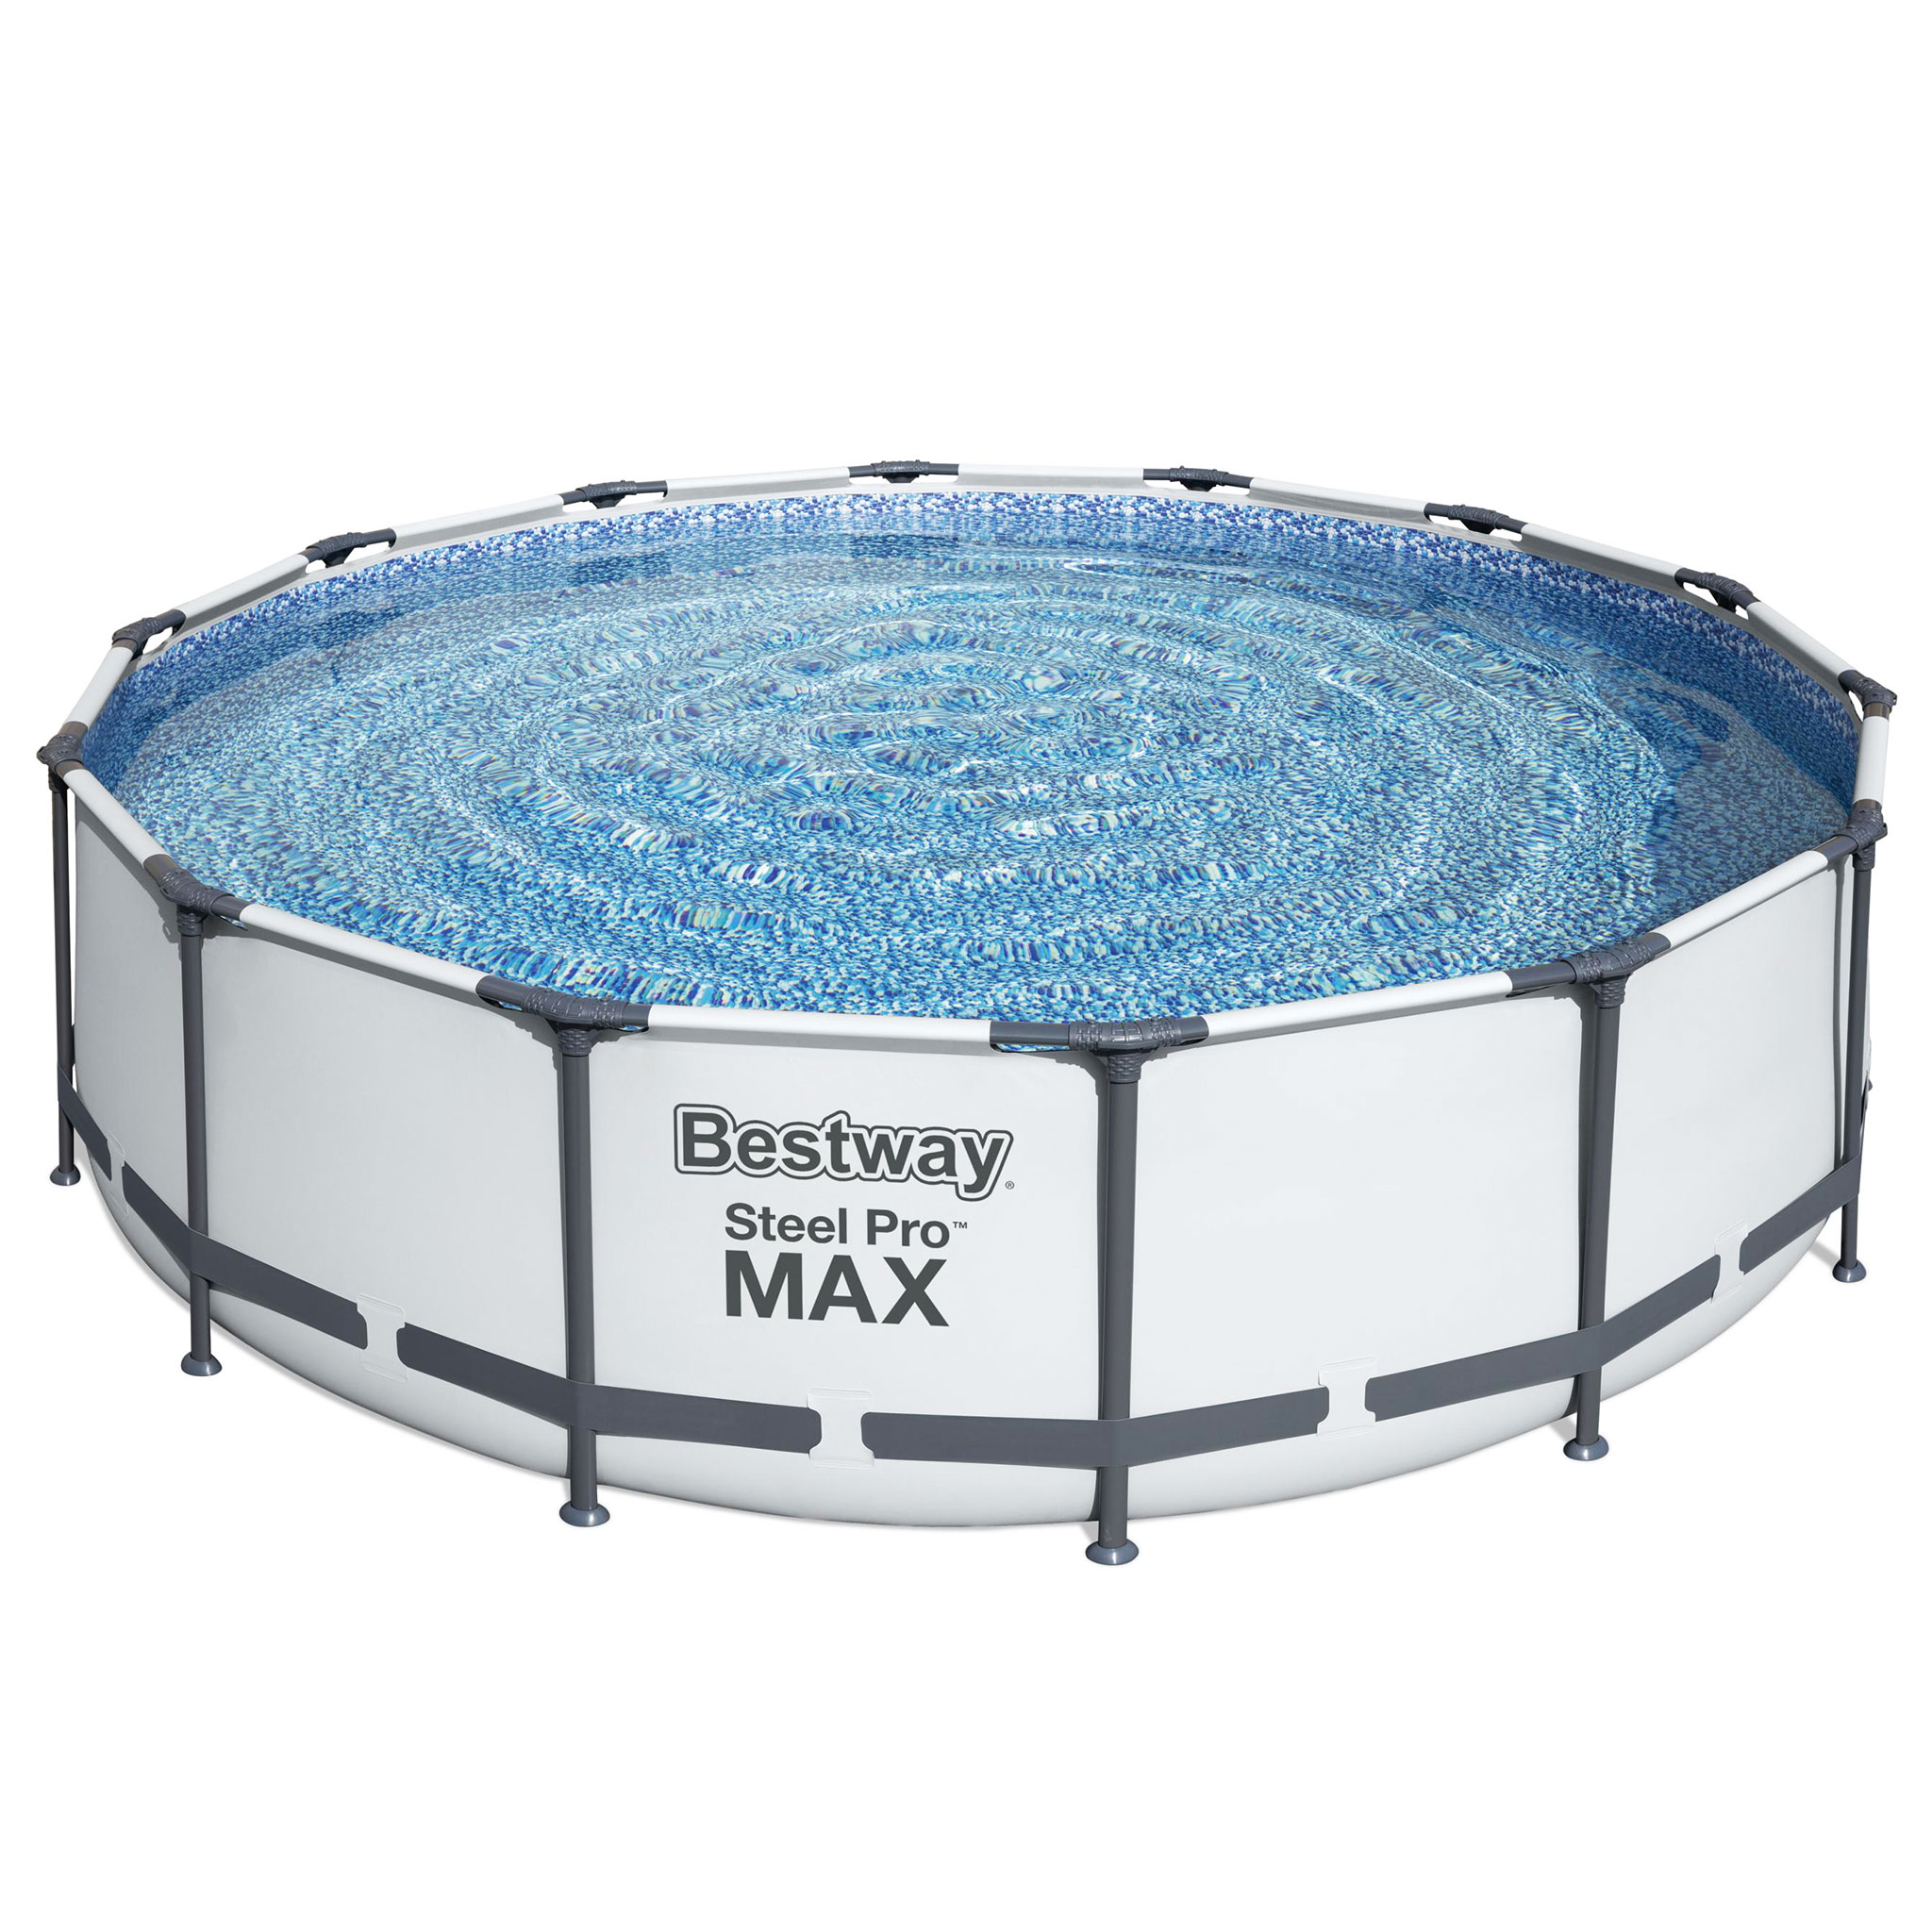 Bestway pool ovan mark Ø4,3m - 107cm djup | Steel Pro MAX (56950)